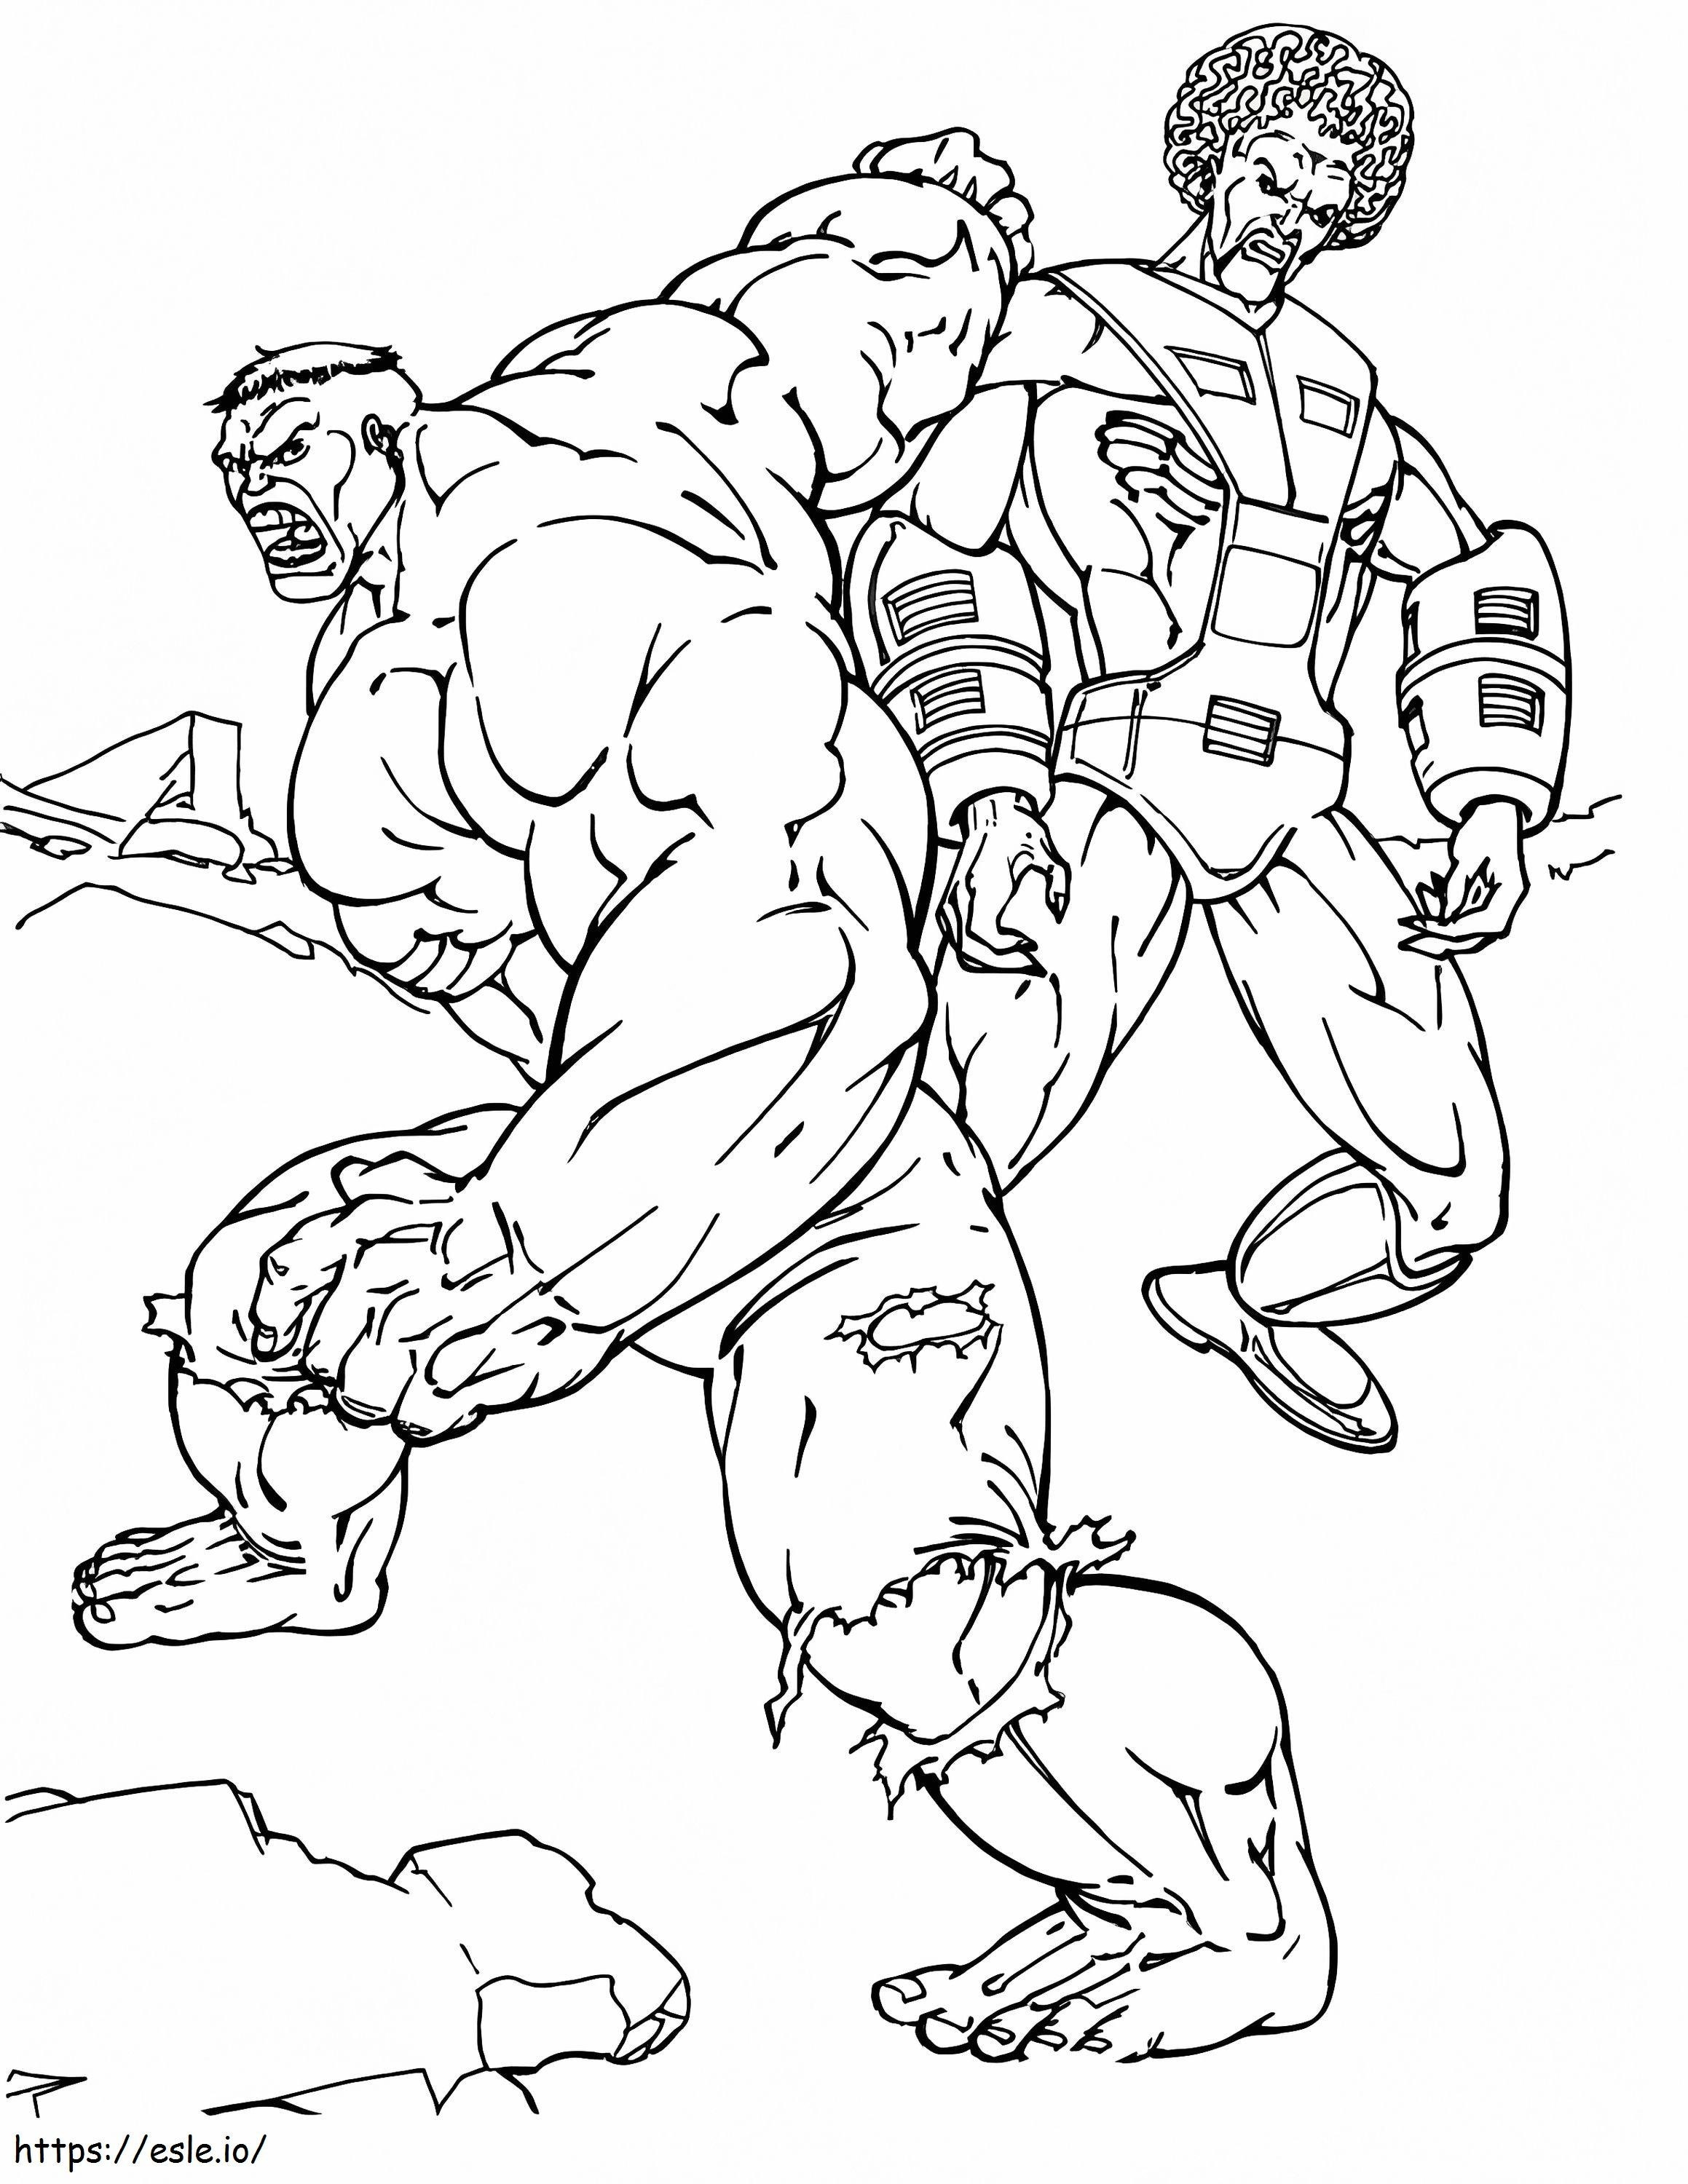 Hulk kontra złoczyńca kolorowanka